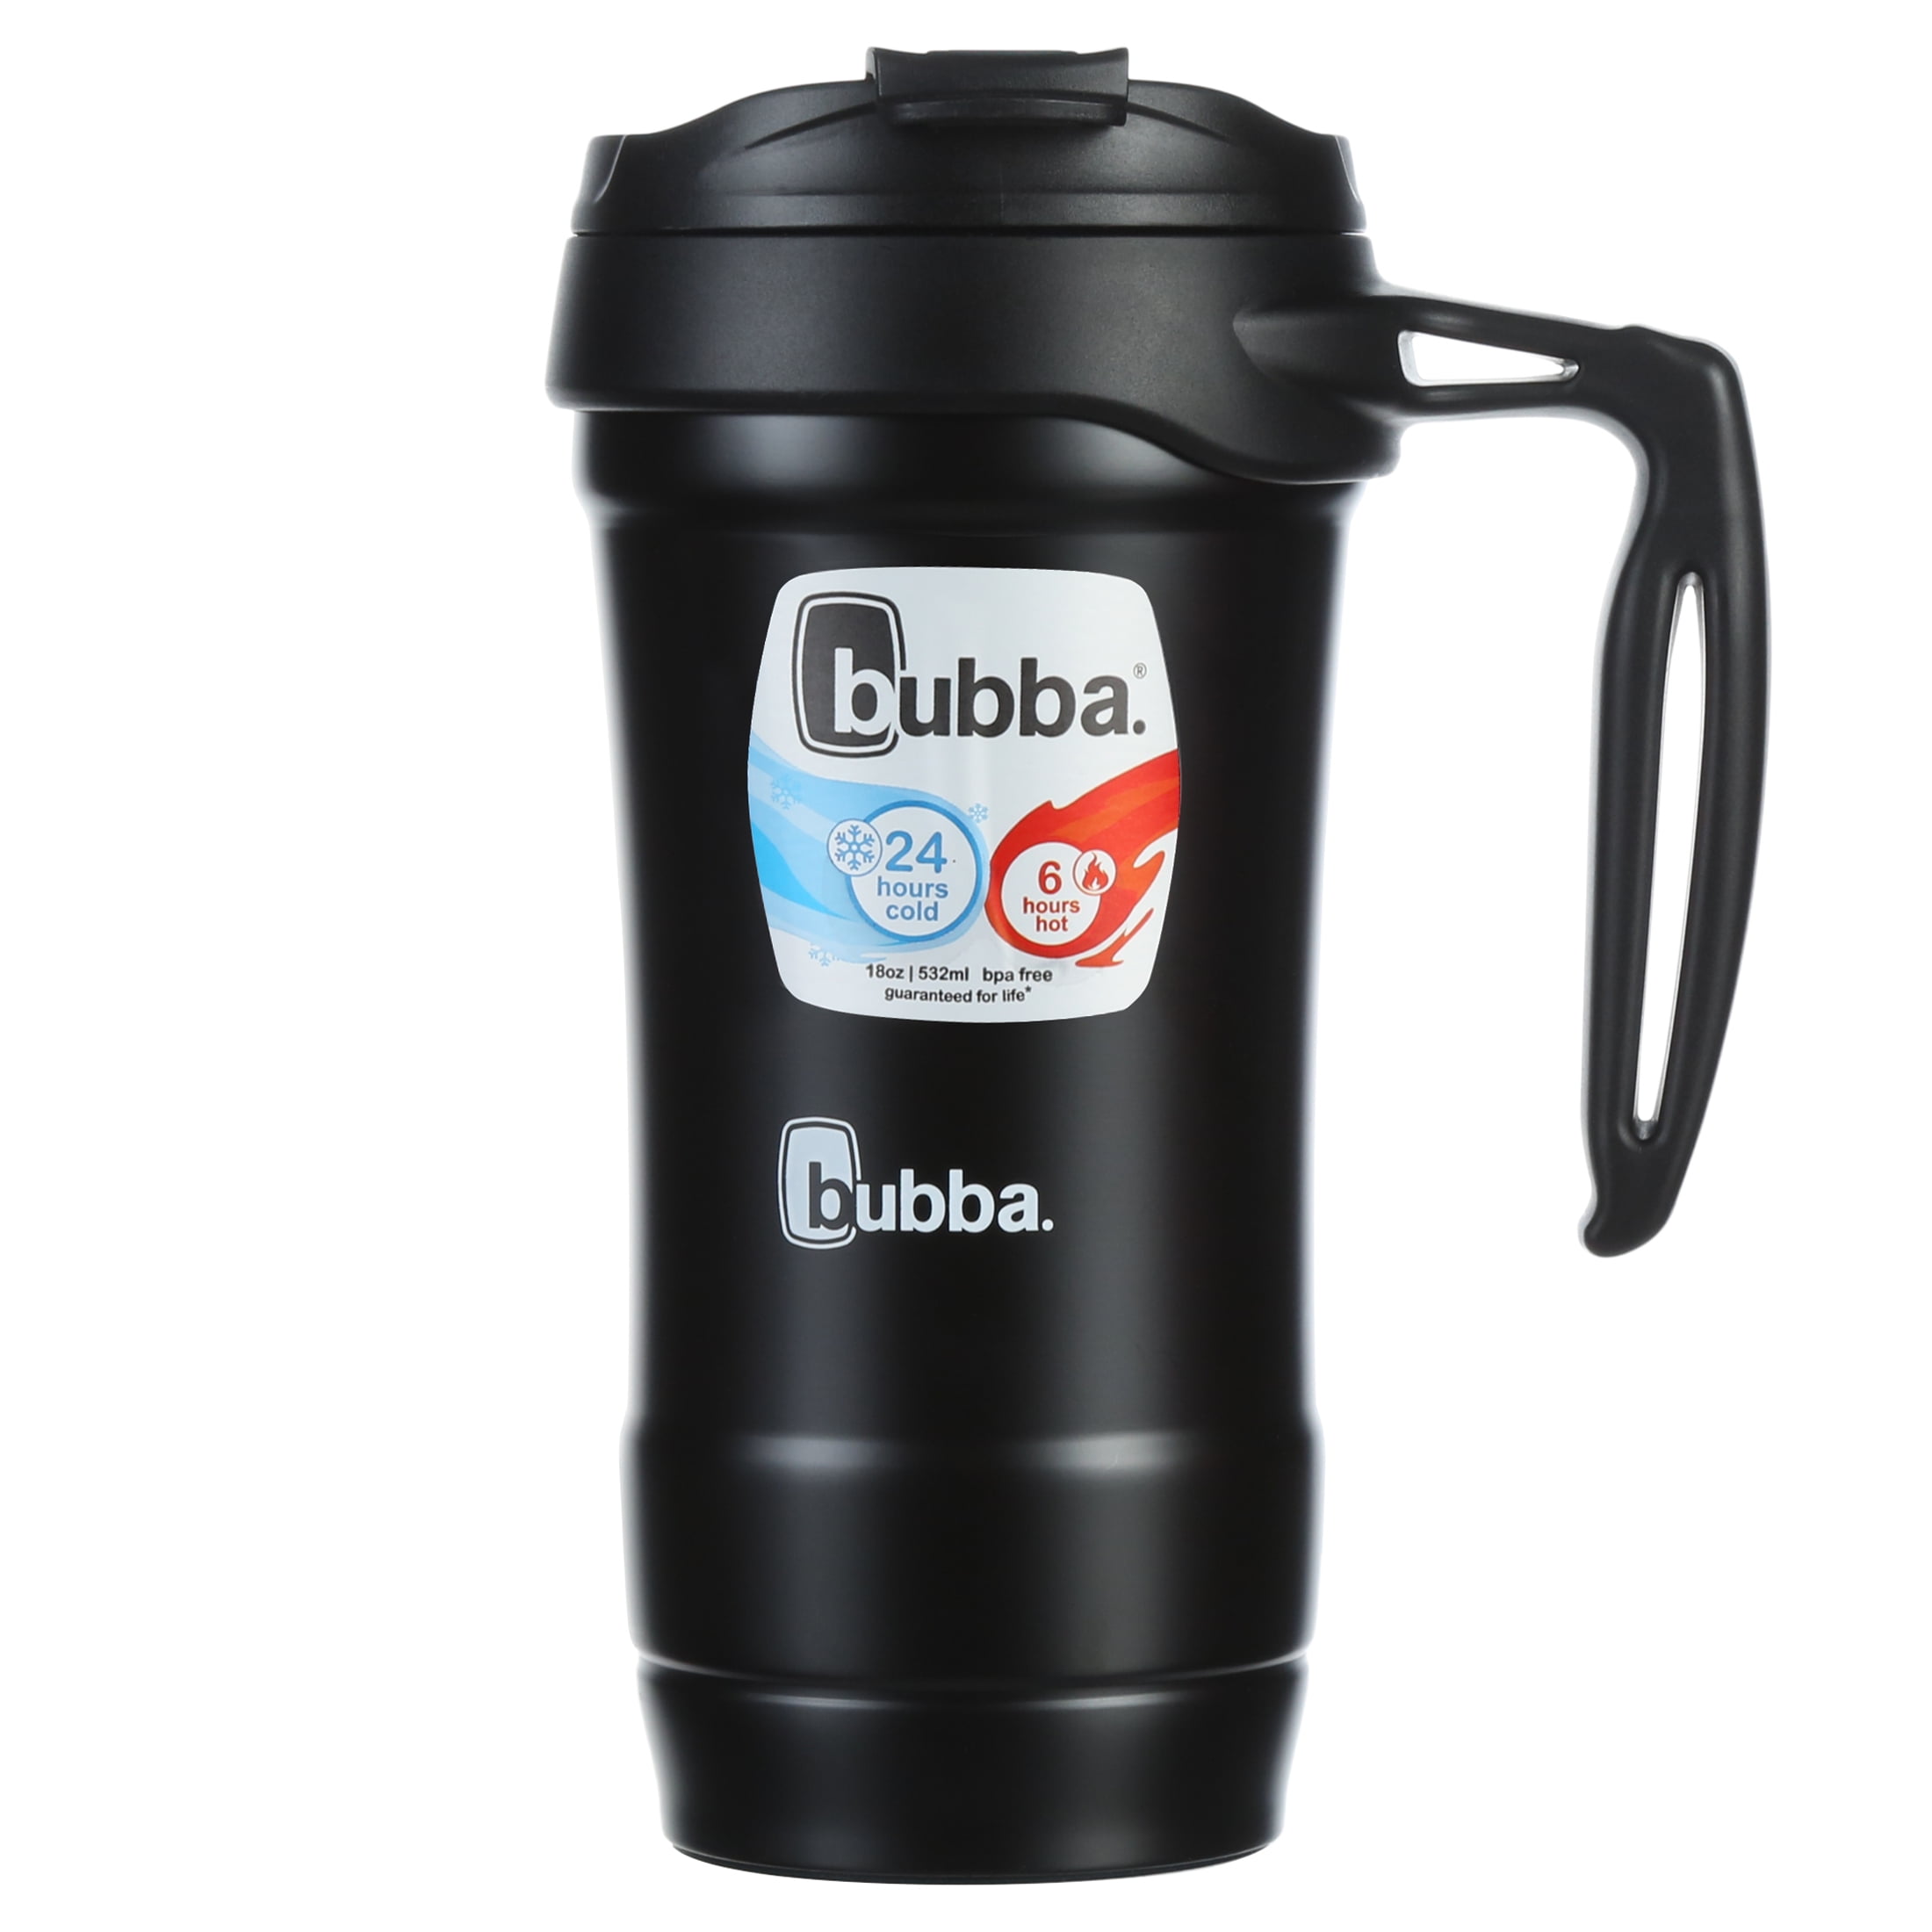 Very Berry Blu Bubba HERO XL Vacuum-Insulated Stainless Steel Travel Mug 30 oz 